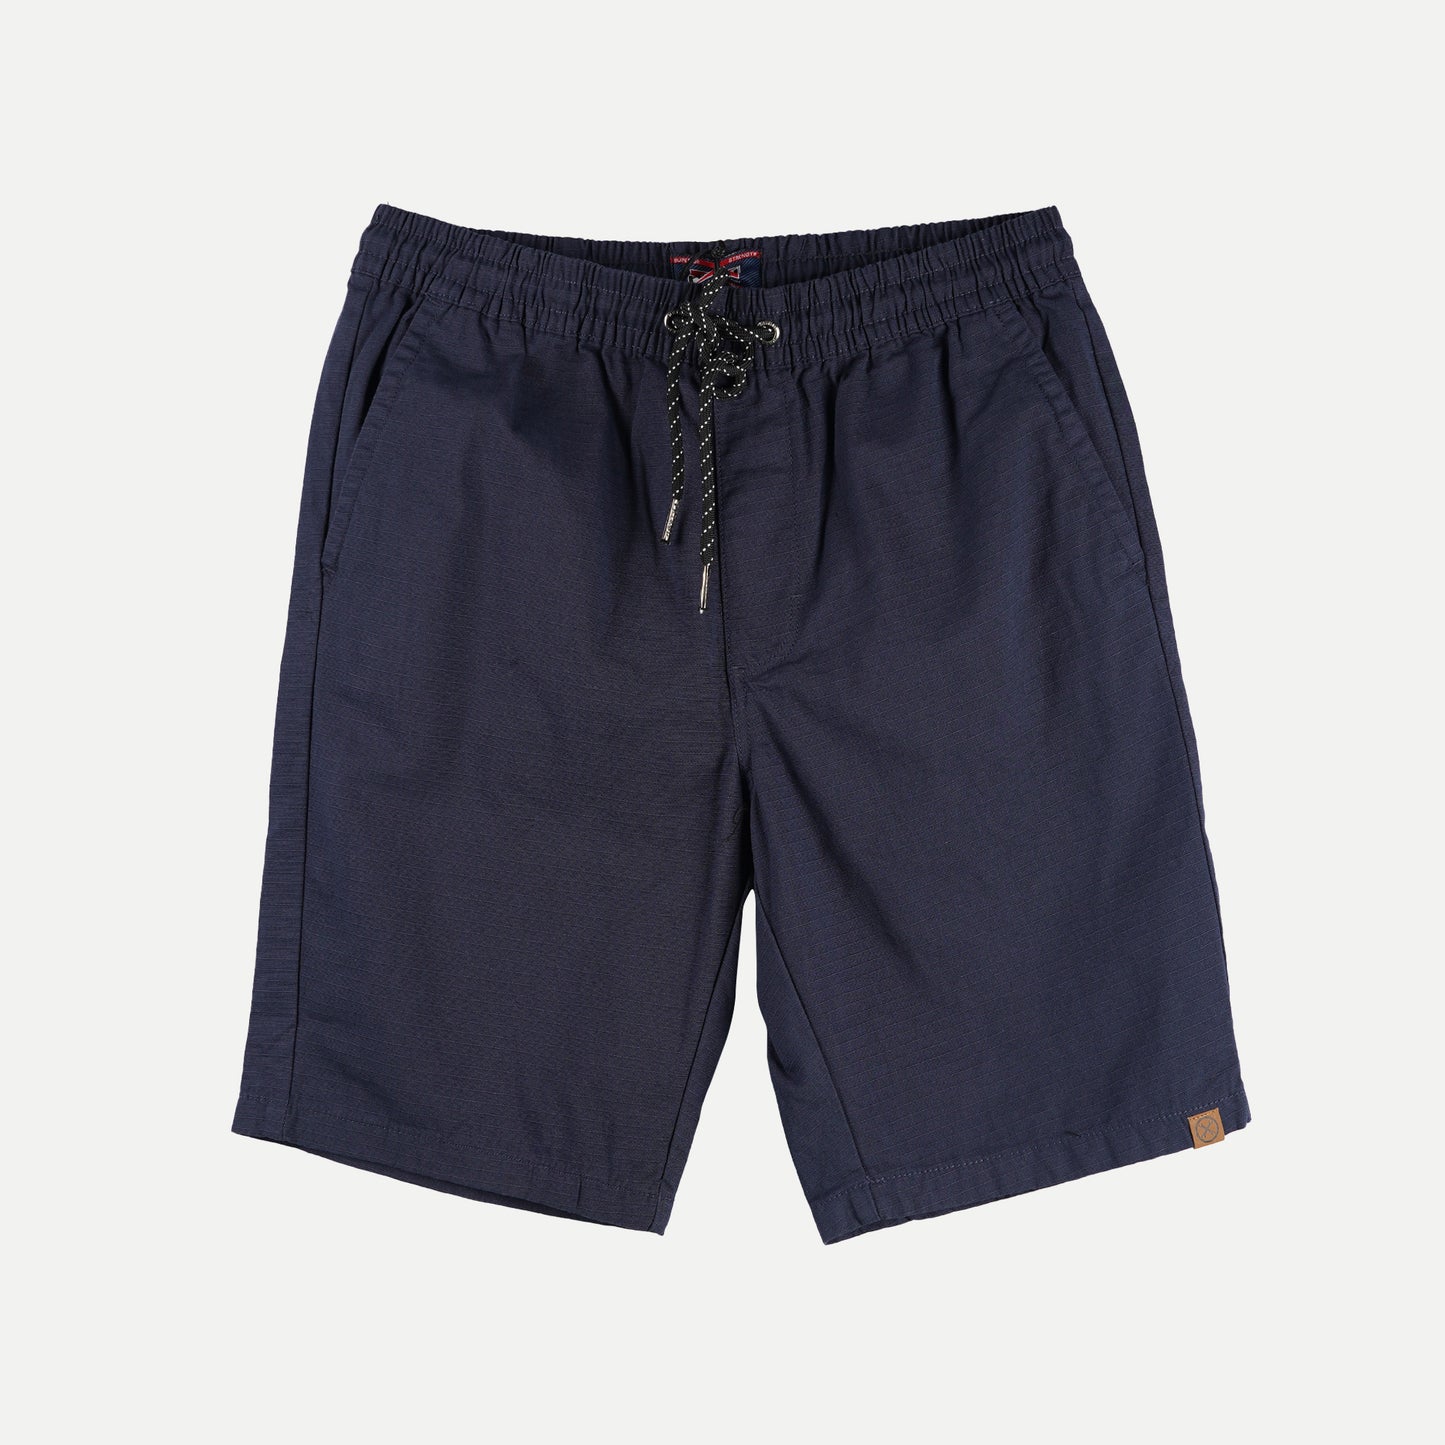 Petrol Basic Non-Denim Jogger Shorts for Men Regular Fitting Garment Wash Fabric Casual short Navy Jogger short for Men 127352 (Navy)